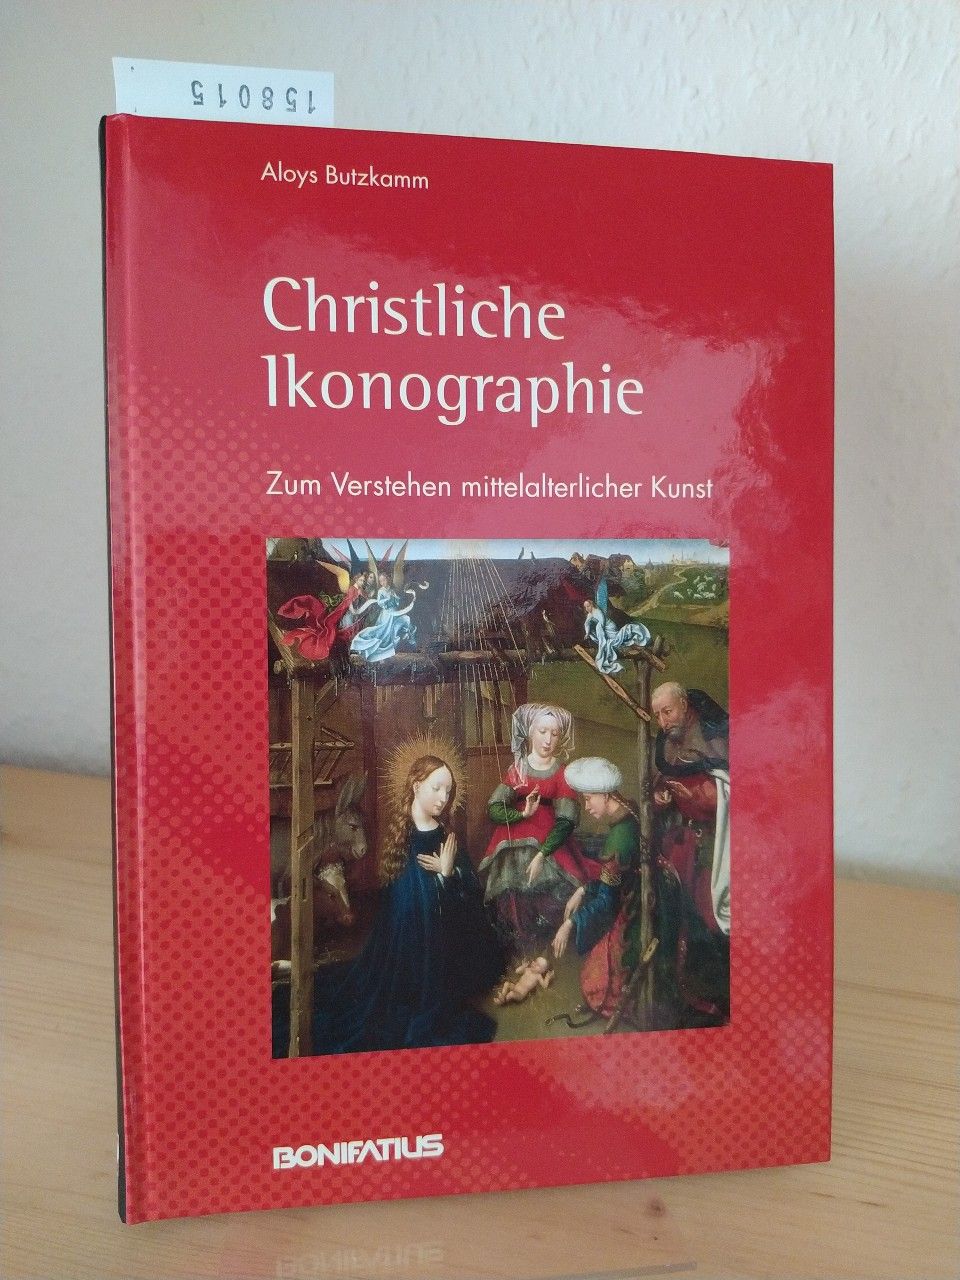 Christliche Ikonographie. Zum Verstehen mittelalterlicher Kunst. [Von Aloys Butzkamm]. - Butzkamm, Aloys